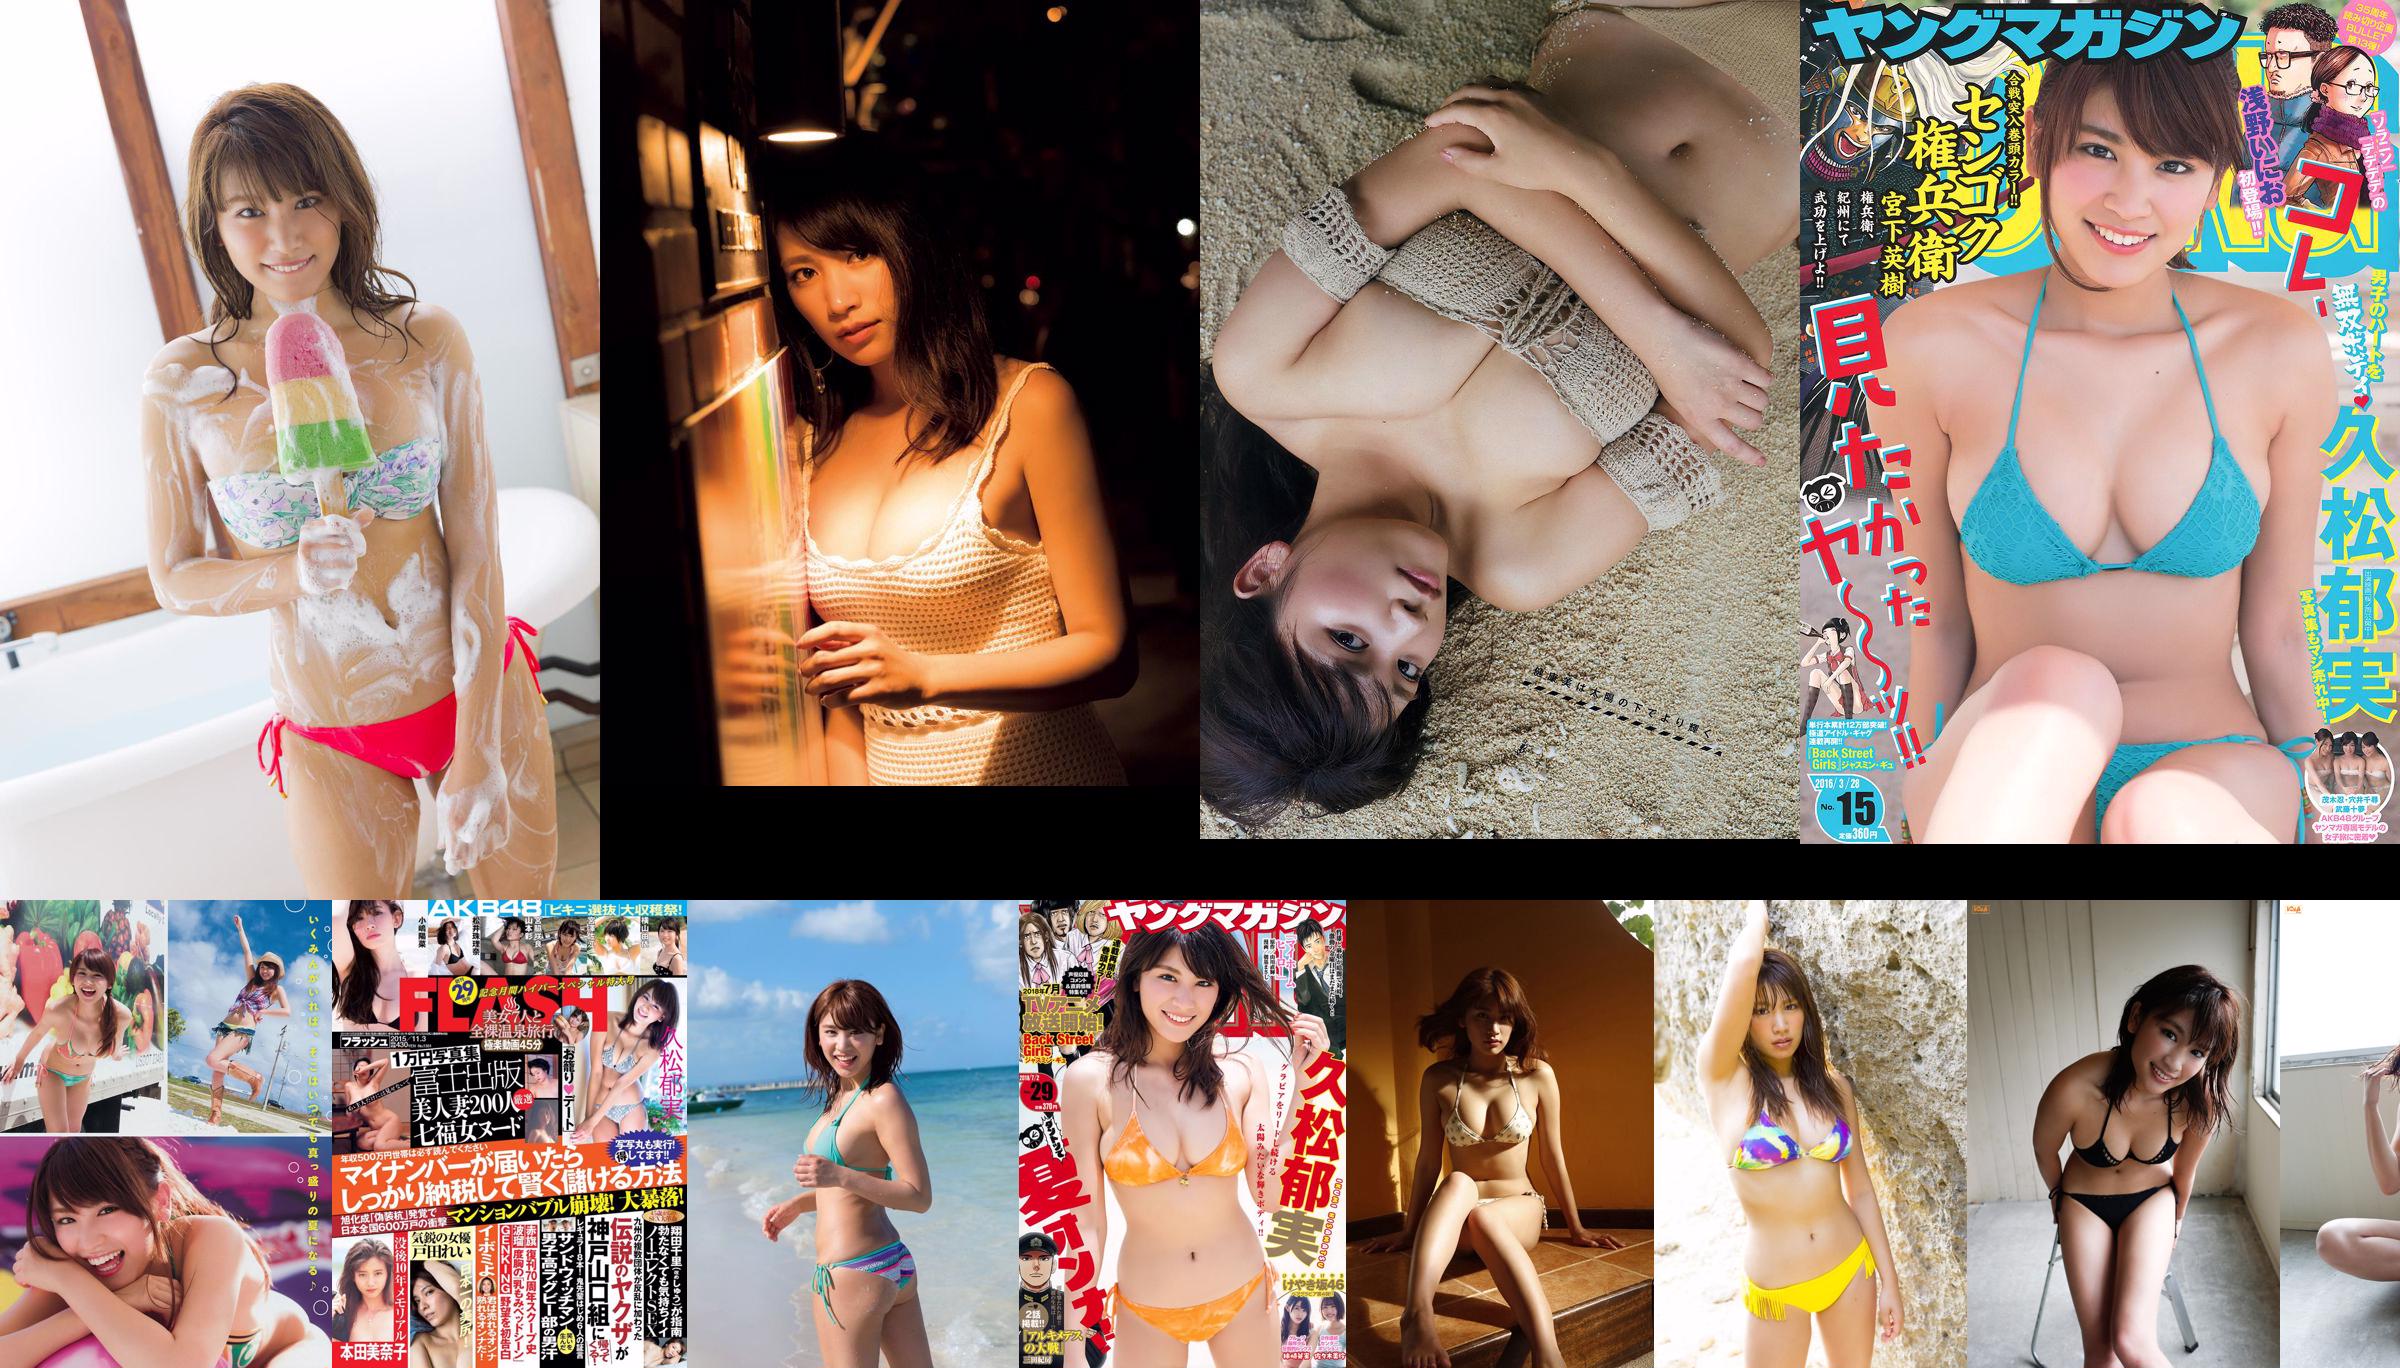 [PIĄTEK] Ikumi Hisamatsu 《Wydanie najlepszego zdjęcia z drugiego po raz pierwszy od 3 lat》 Zdjęcie No.c4c4e4 Strona 1